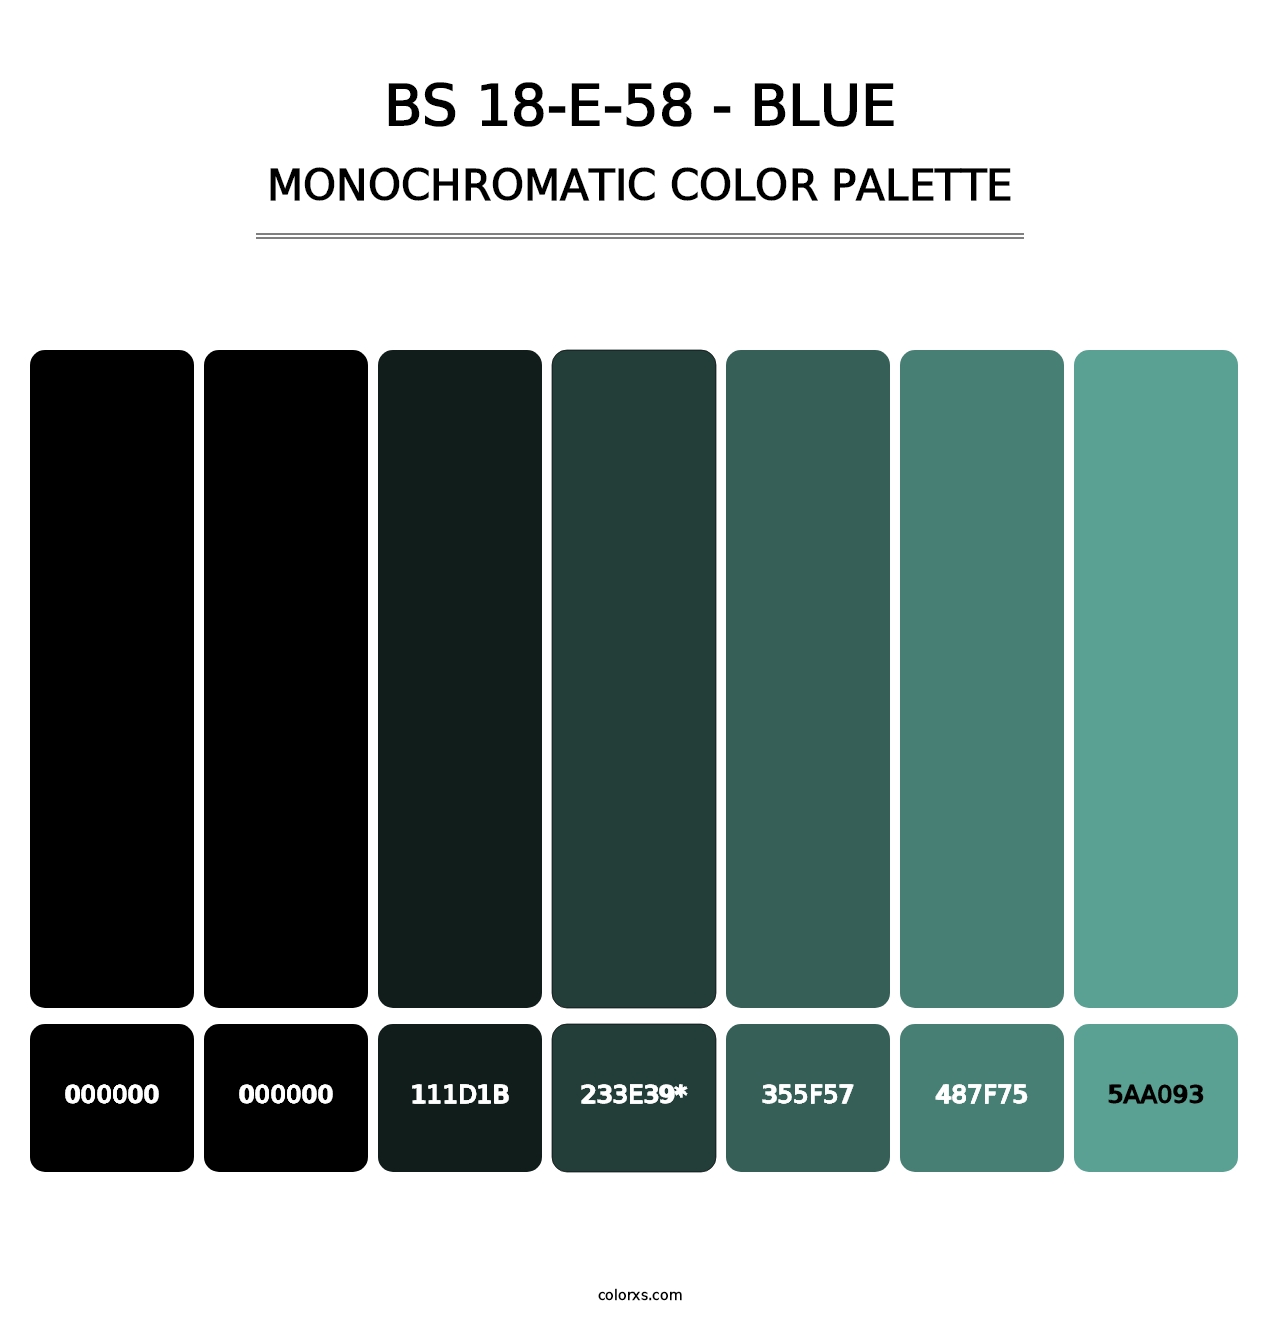 BS 18-E-58 - Blue - Monochromatic Color Palette